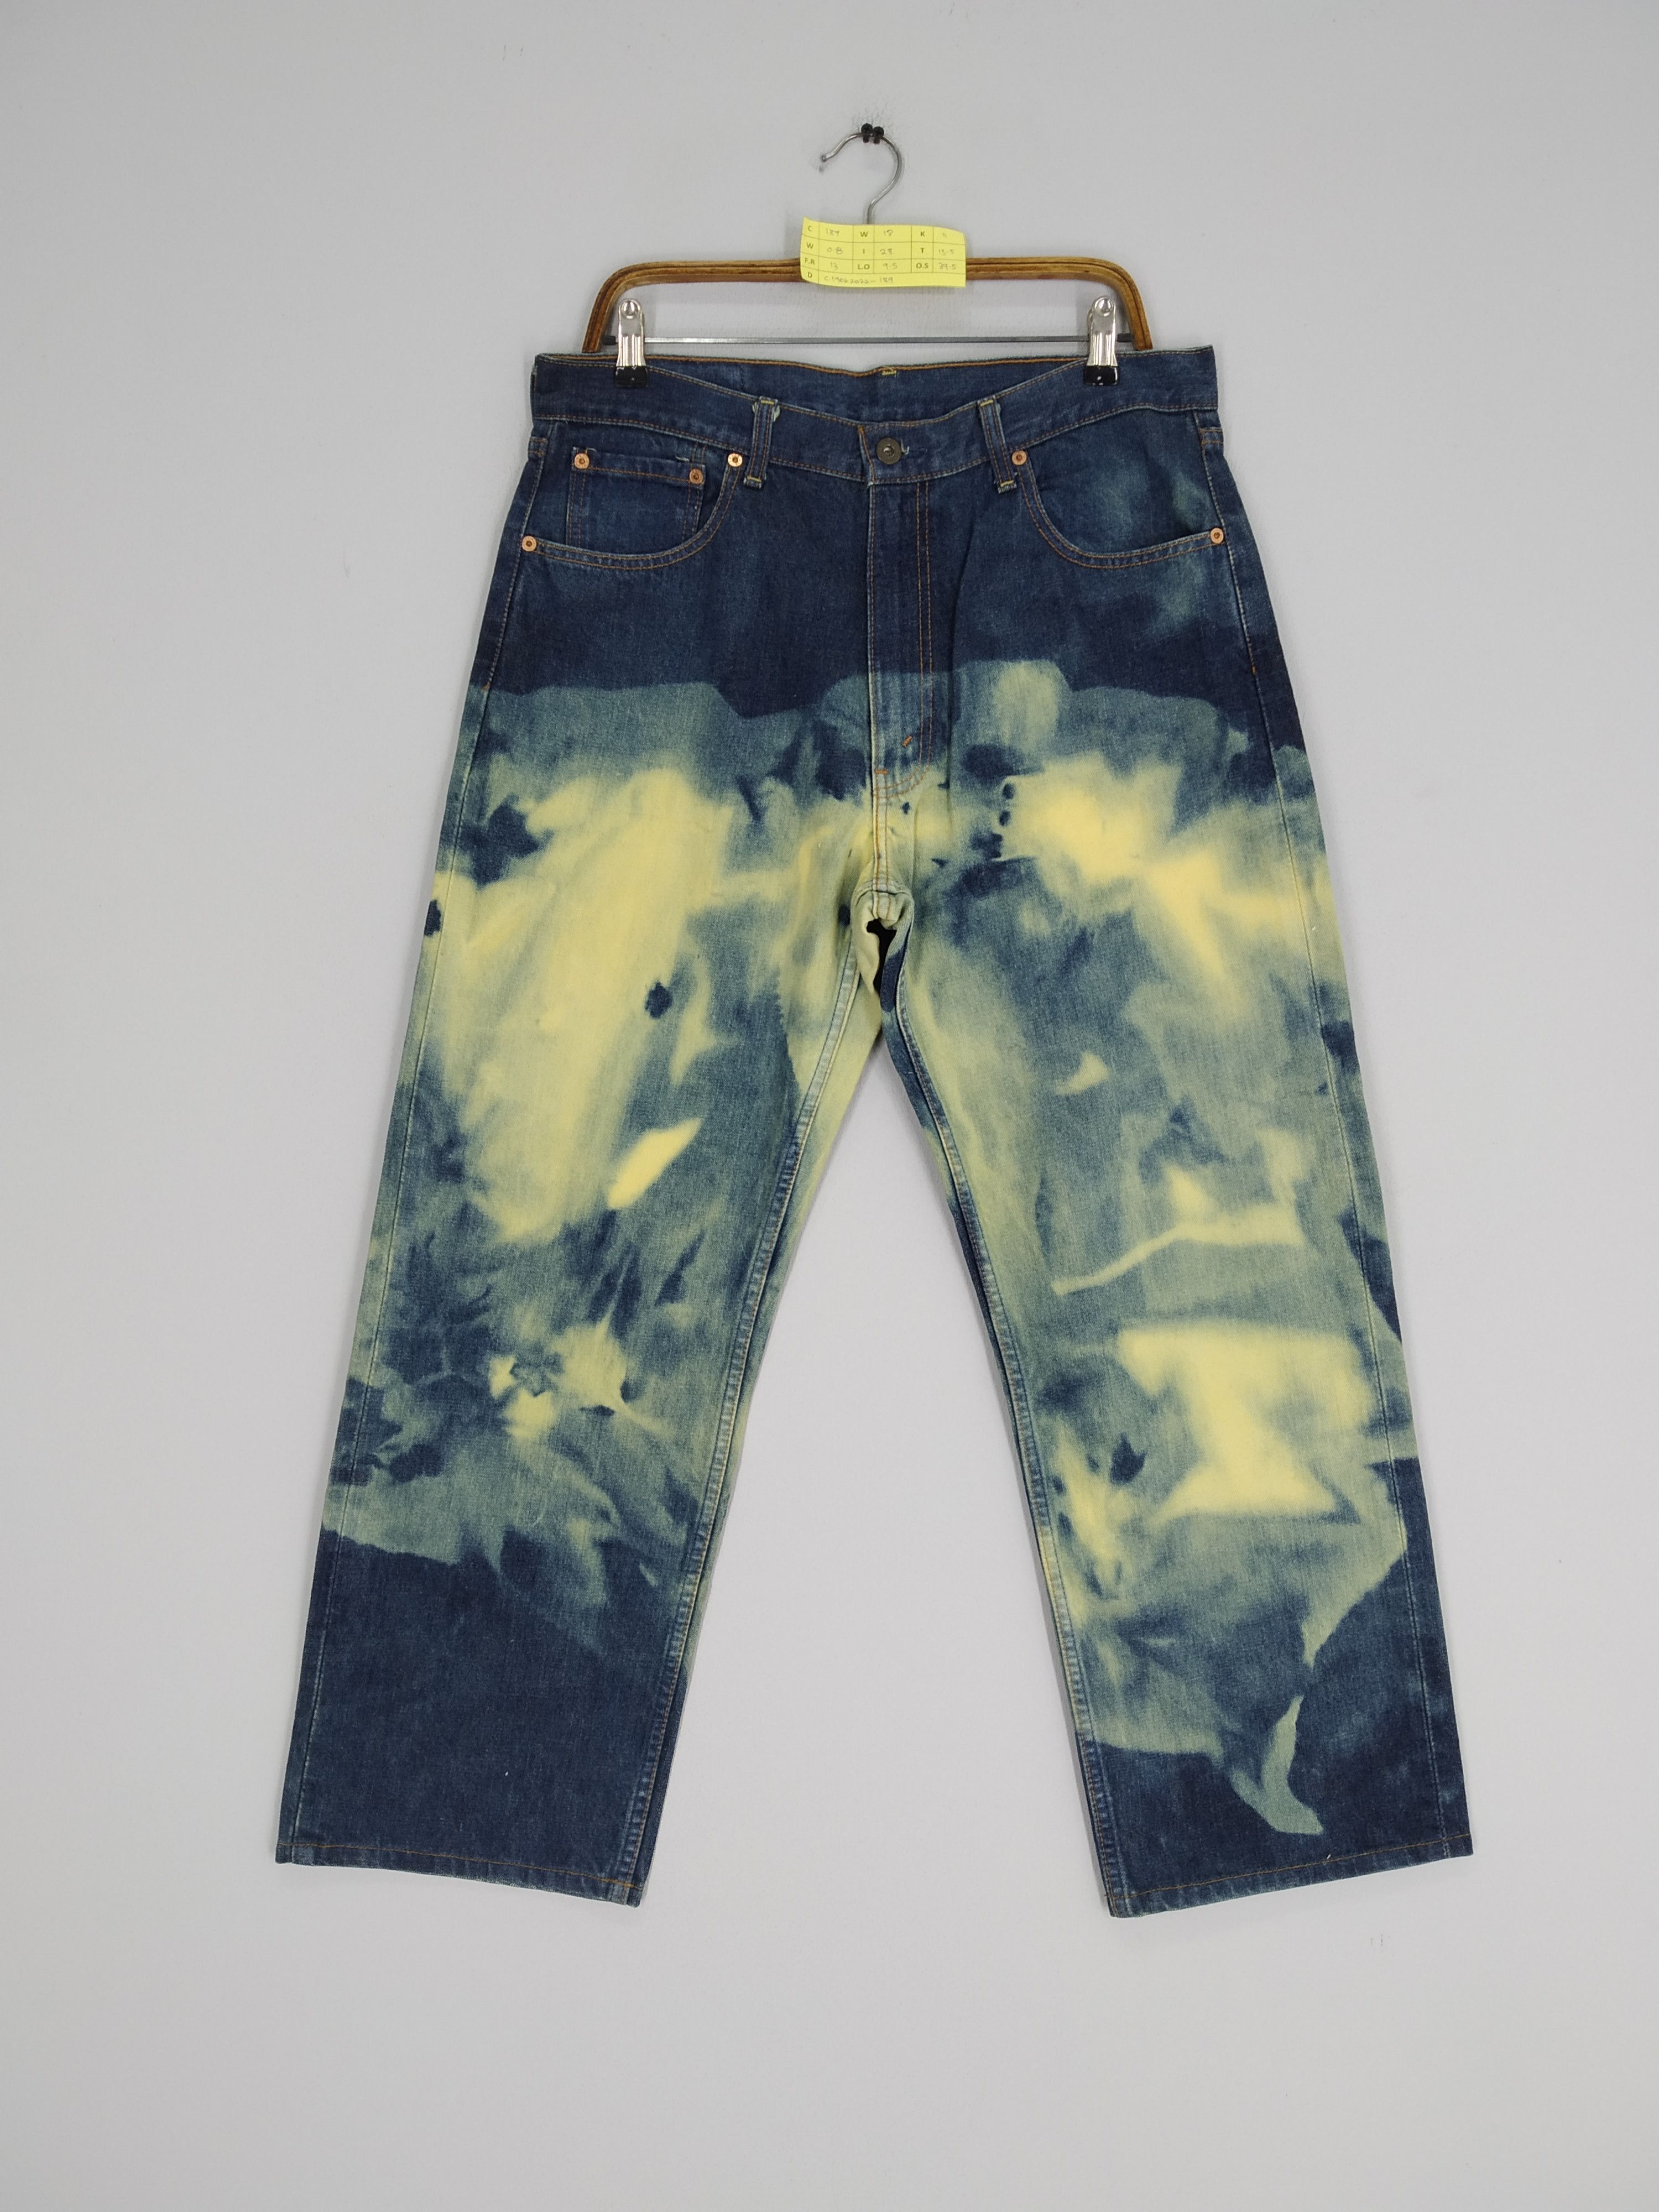 Levi's Levi's 503 Acid Wash Pattern Baggy Denim Jeans Size US 36 / EU 52 - 2 Preview